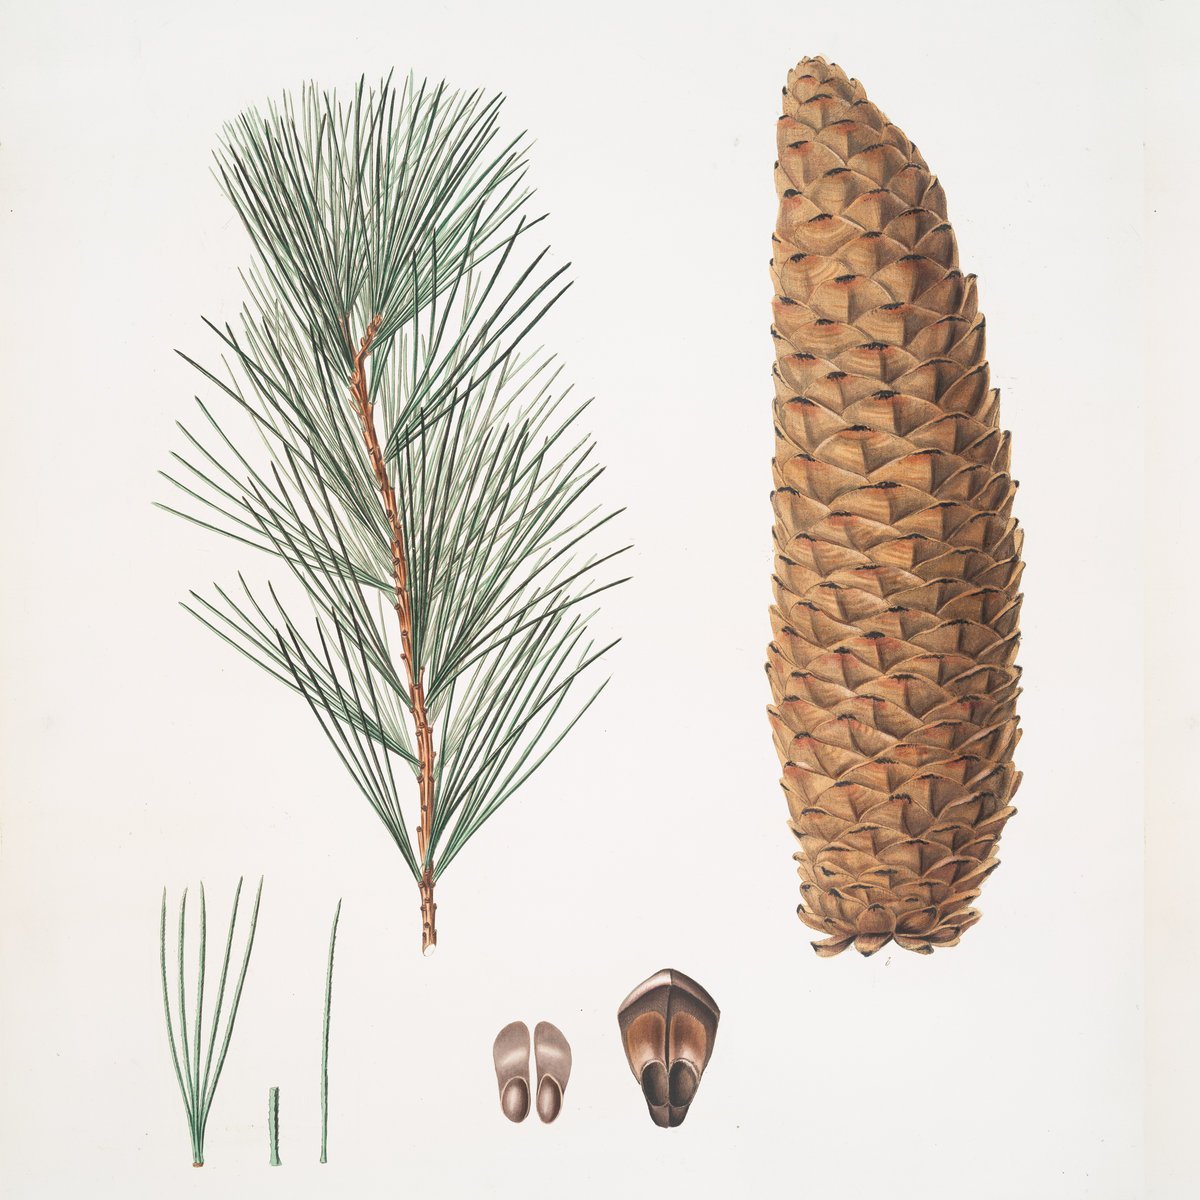 Семян хвойных рисунок. Сосны Pinus lambertiana. Pinus lambertiana Cone. Pinus lambertiana шишка. Сосна Ламберта (Pinus lambertiana).